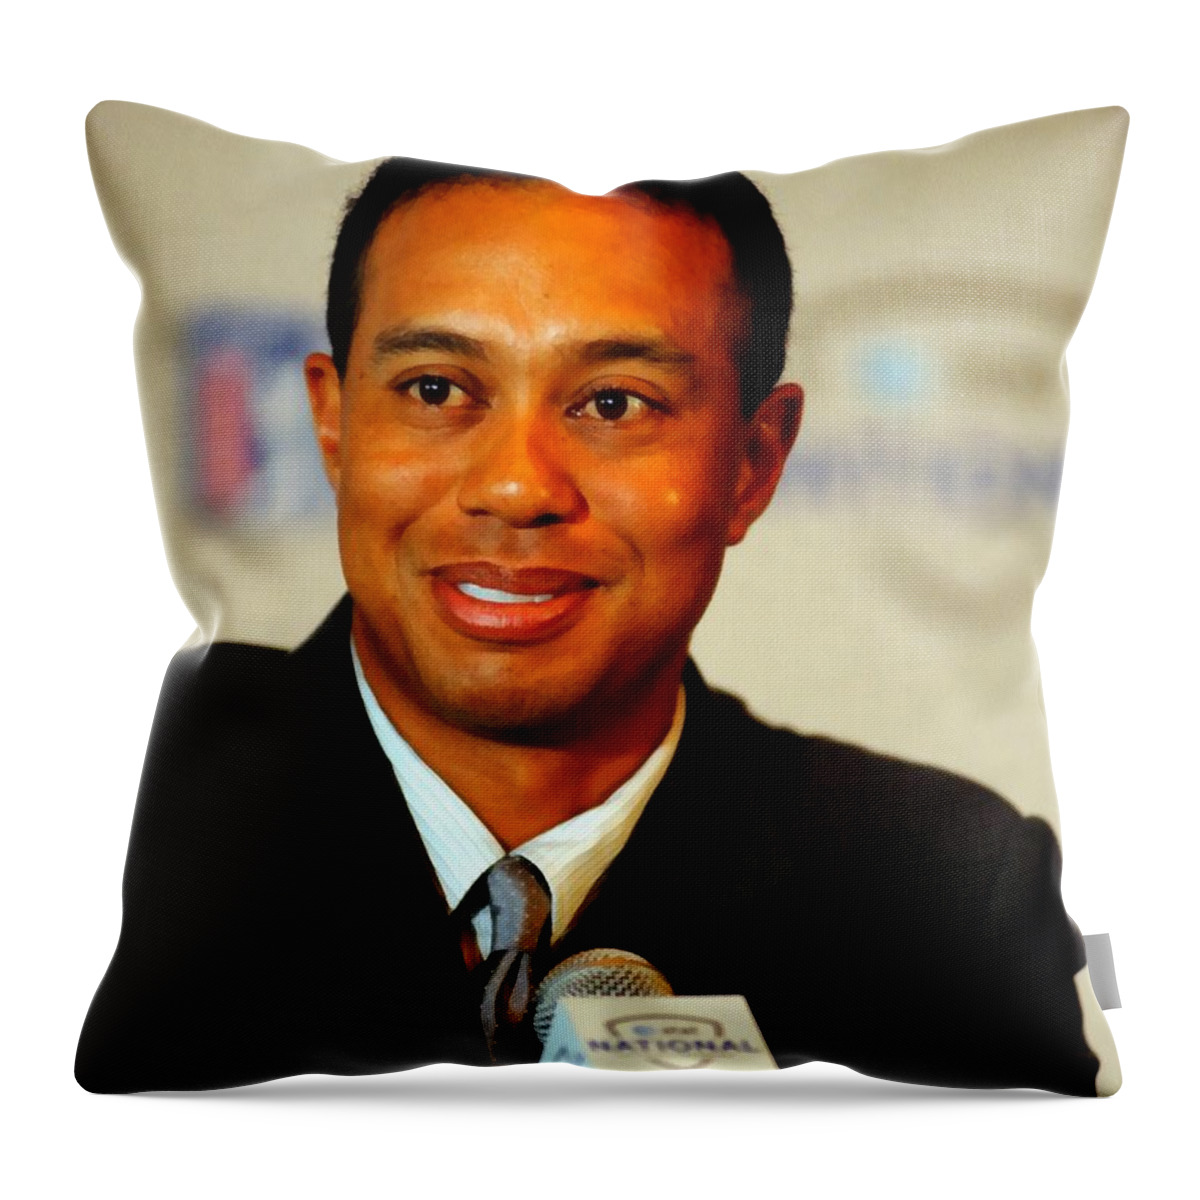 Tim Hipps Throw Pillow featuring the digital art Tiger Woods by Tim Hipps